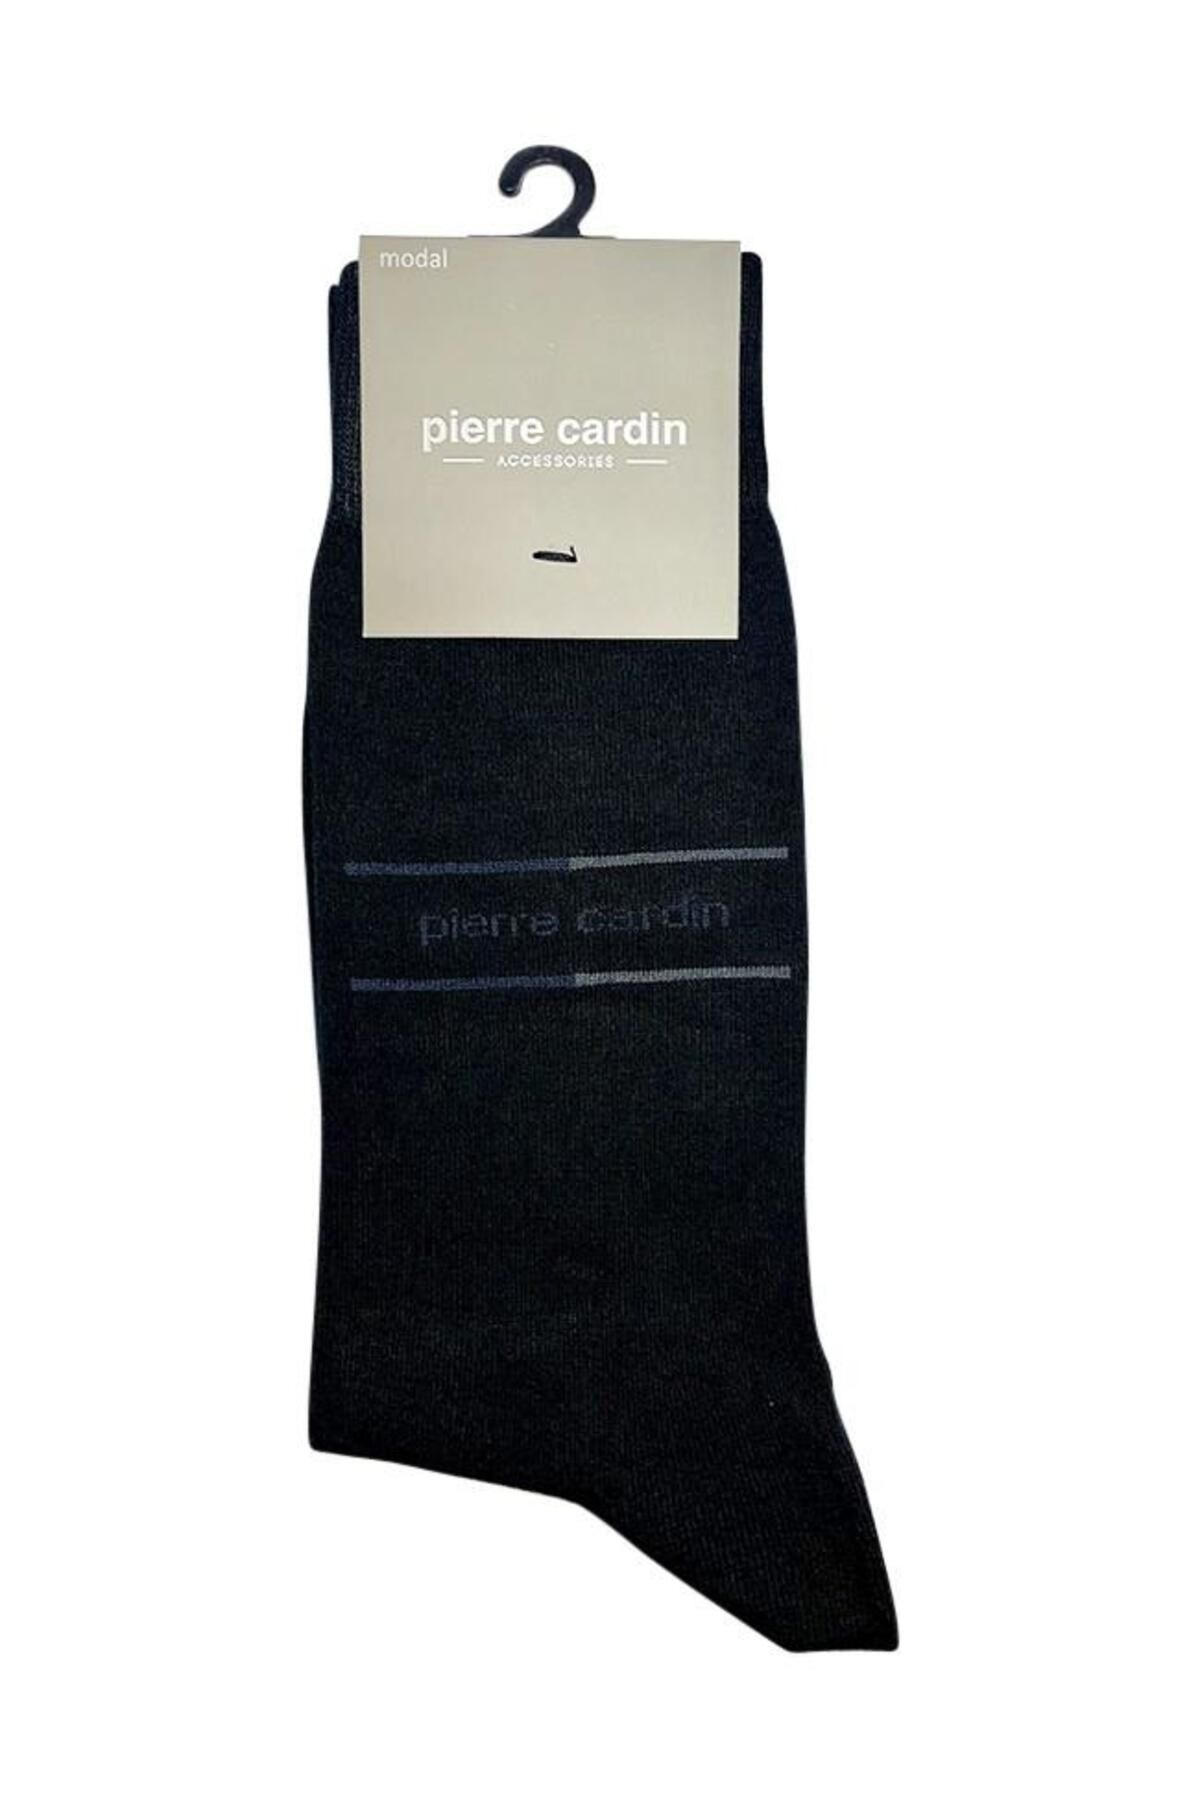 Pierre Cardin 933 Timmi Modal Elastan Erkek Çorap